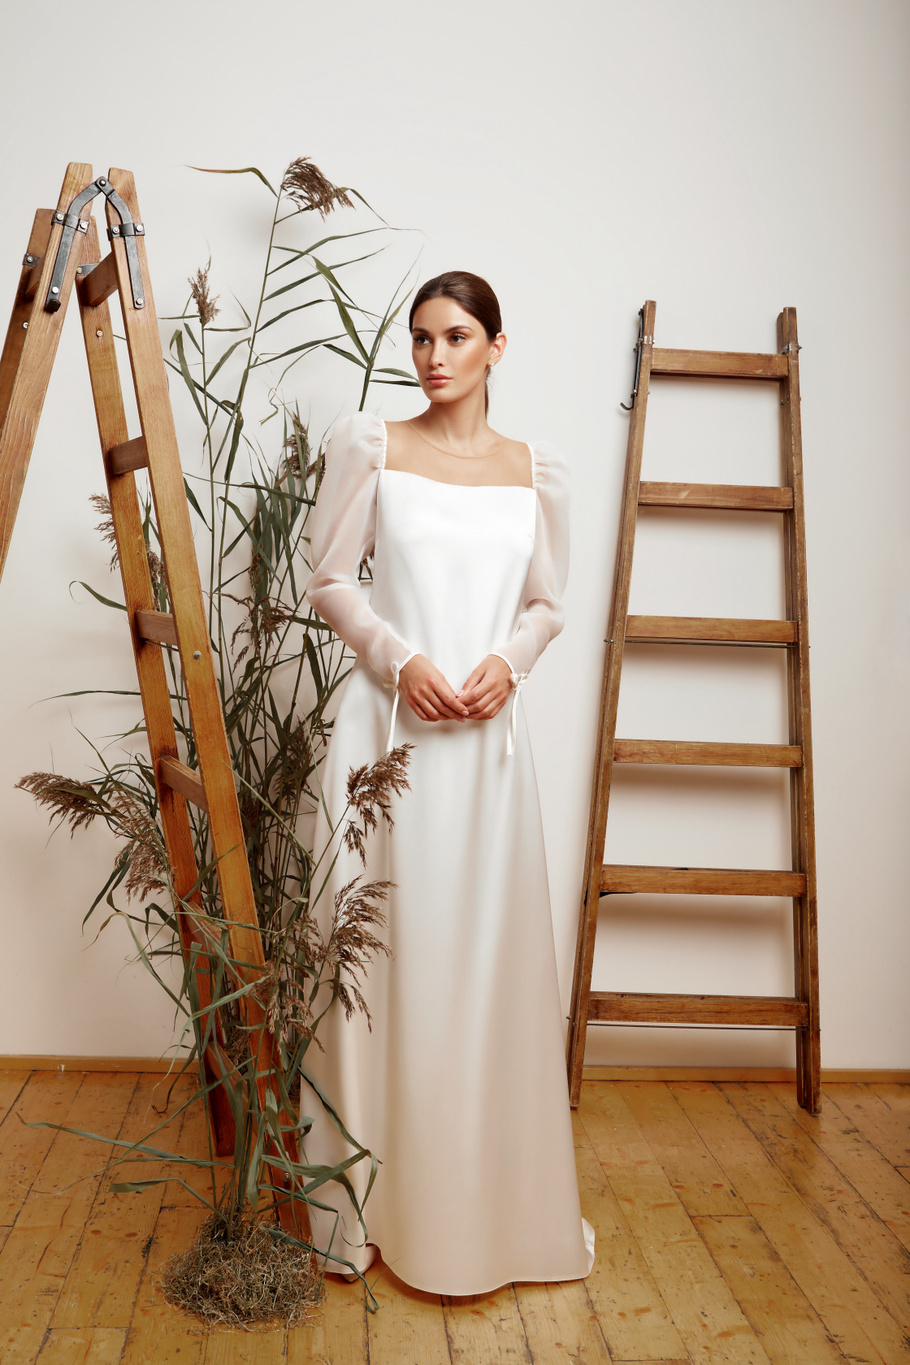 Купить свадебное платье «Роу» Мэрри Марк из коллекции 2020 года в Ярославле